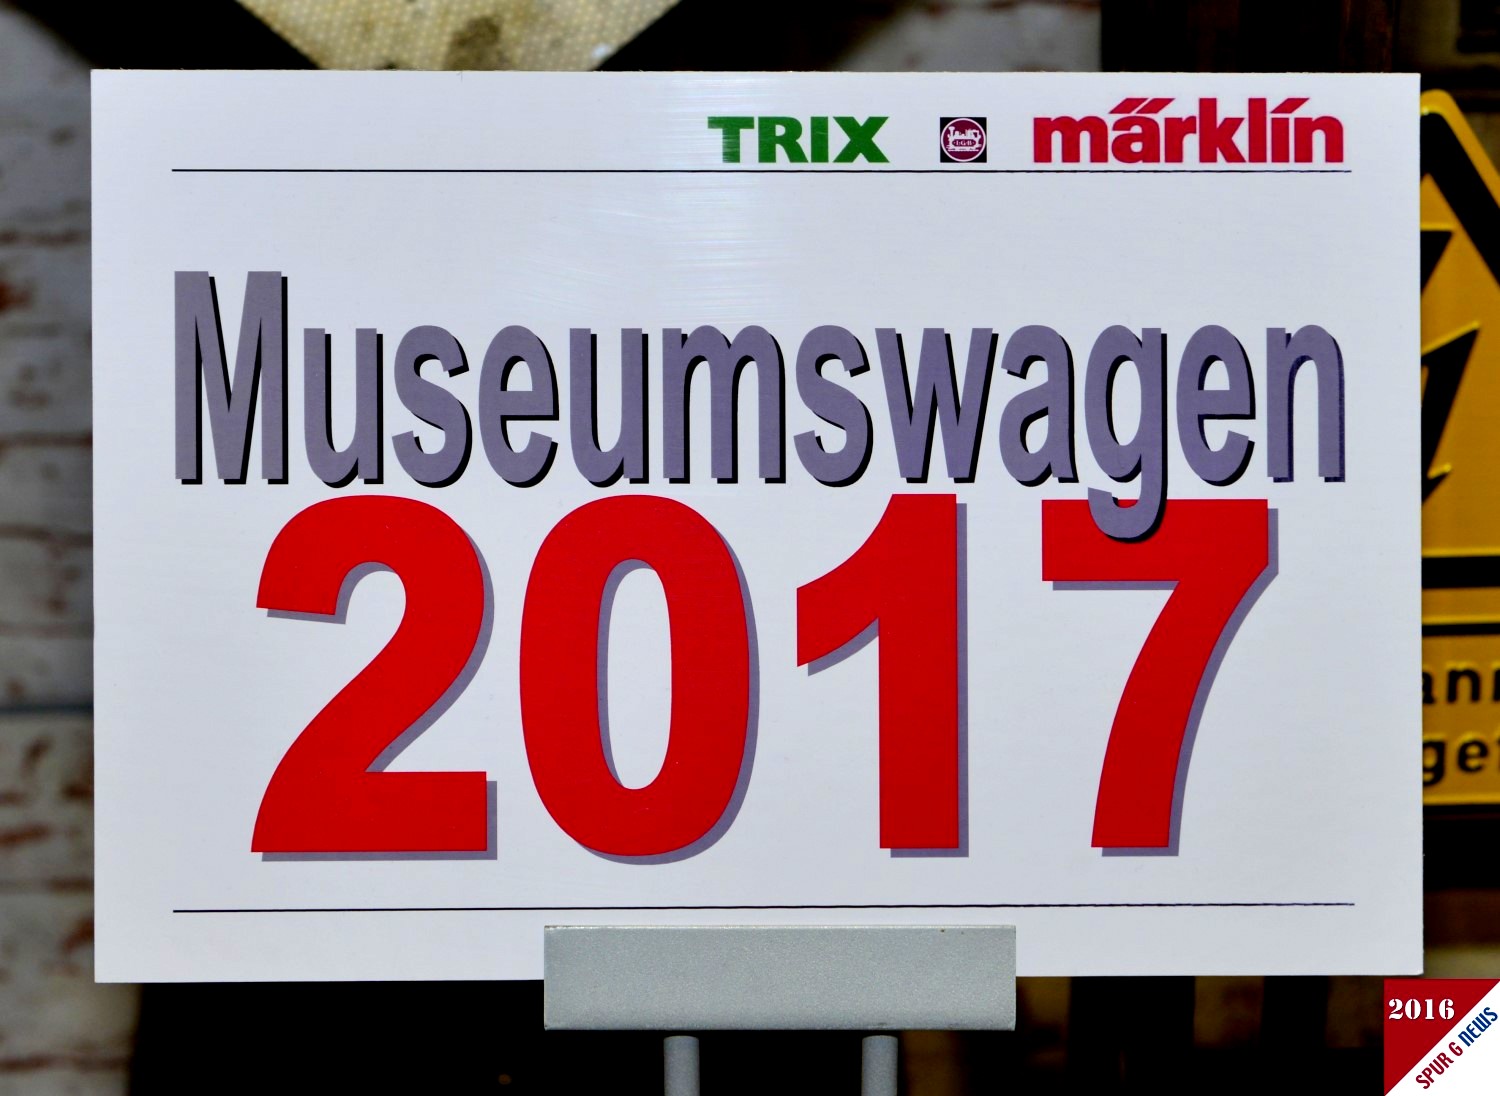 Museumswagen 2017 von LGB - Vorstellung im Mrklinmuseum. 